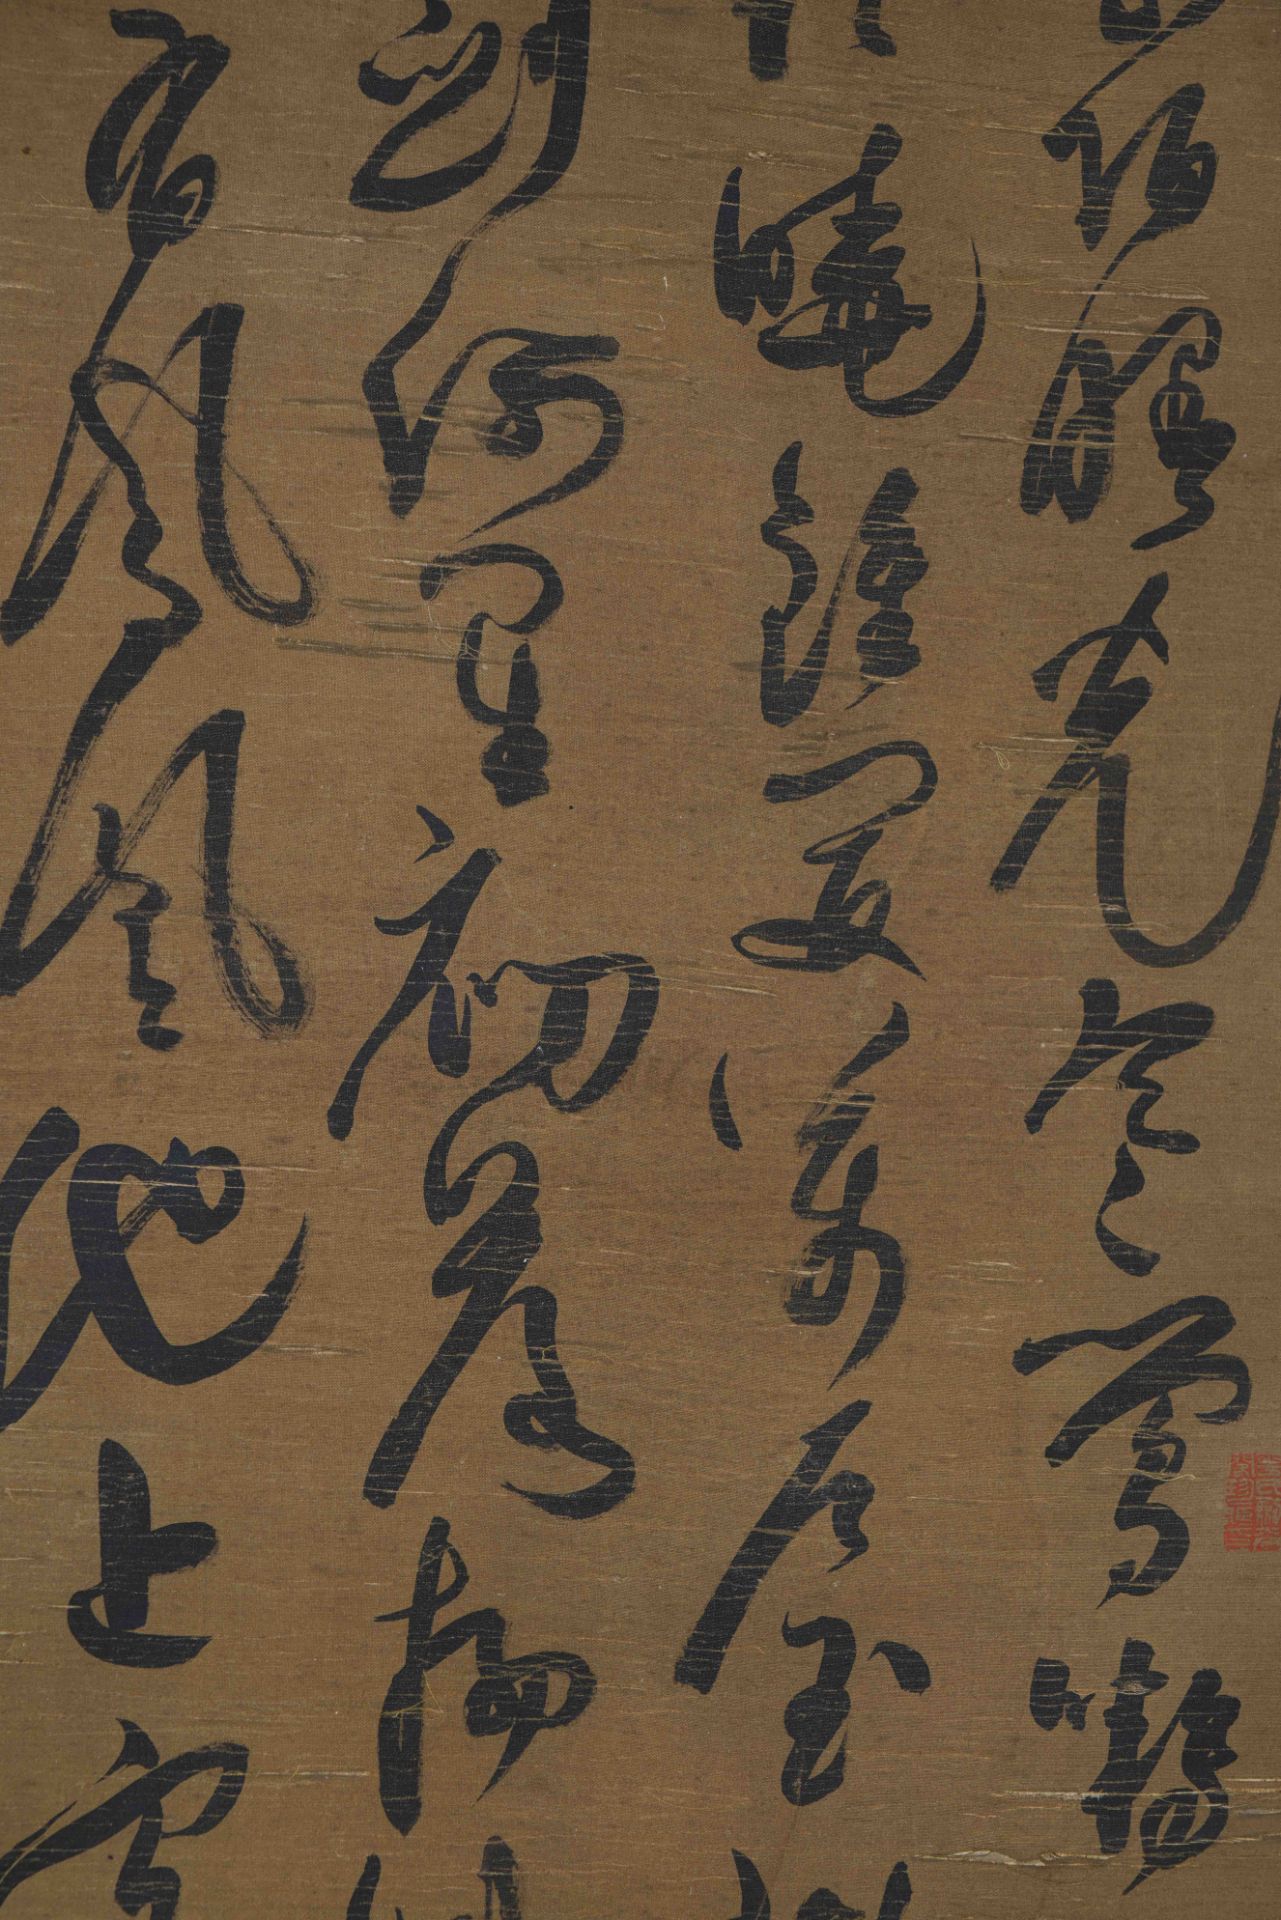 陳淳 A Chinese Scroll Calligraphy By Chen Chun - Image 9 of 14